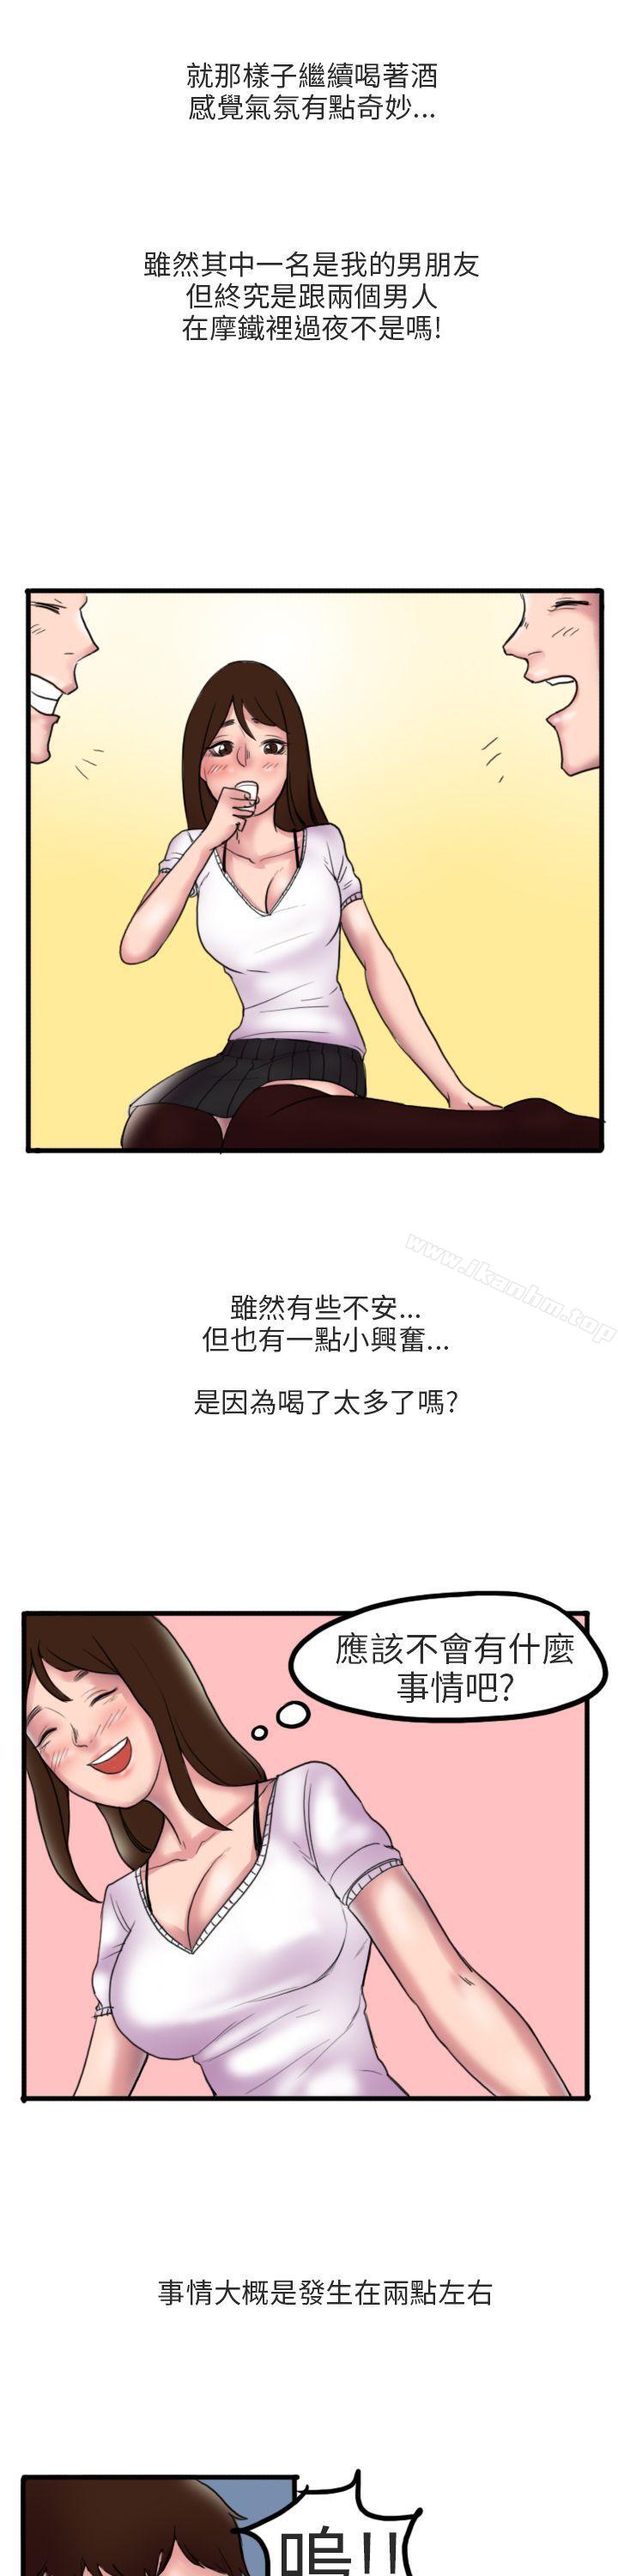 漫画韩国 秘密Story第二季   - 立即阅读 第二季 床與墻壁之間(上)第8漫画图片